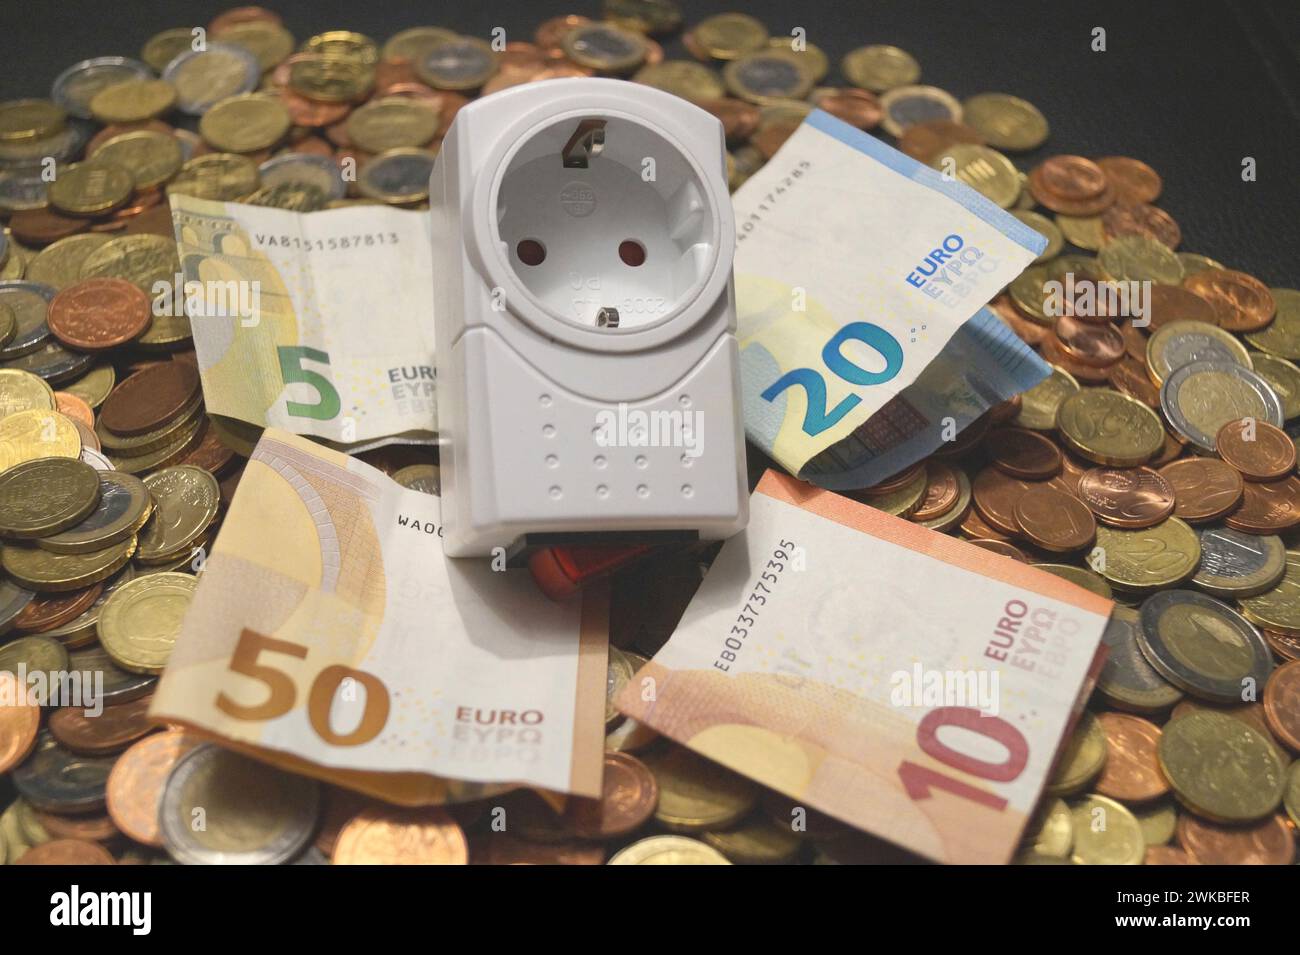 adaptateur de prise et de l'argent, image symbolique des coûts d'électricité Banque D'Images